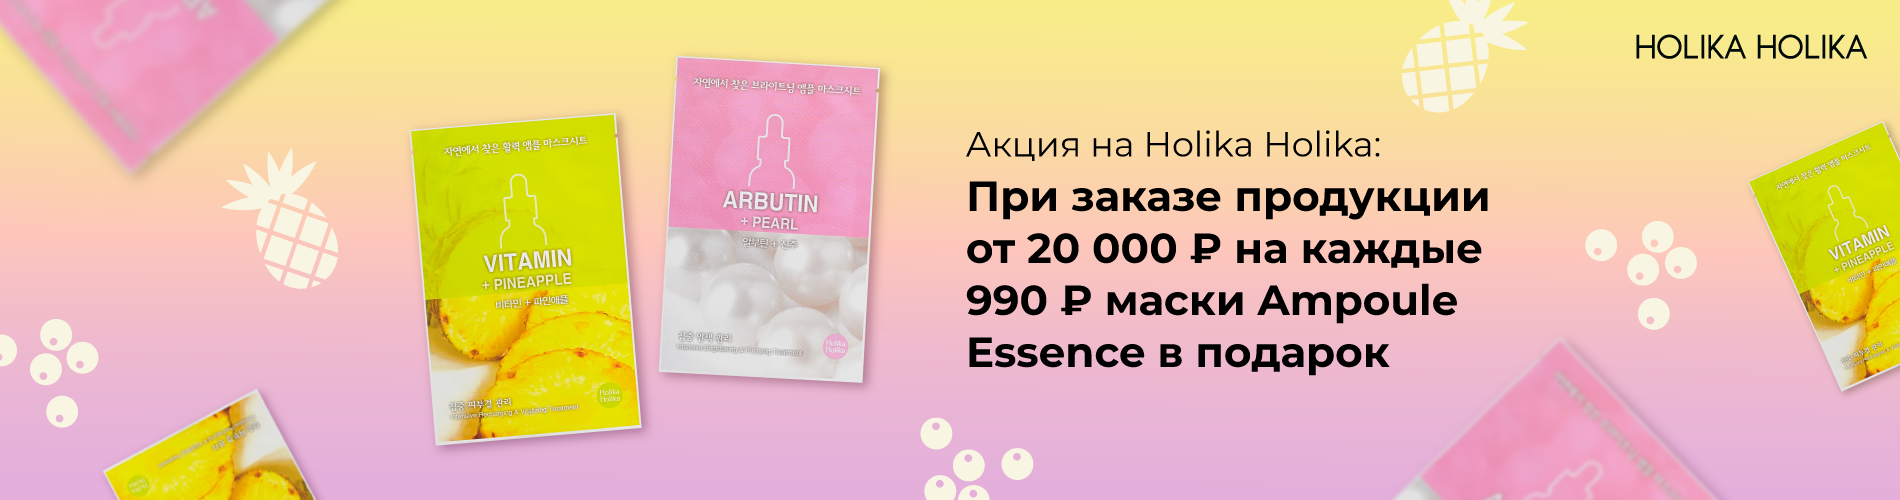 При заказе продукции бренда Holika Holika от 20 тысяч рублей, подарок за каждые 990 рублей маска Ampoule Essence